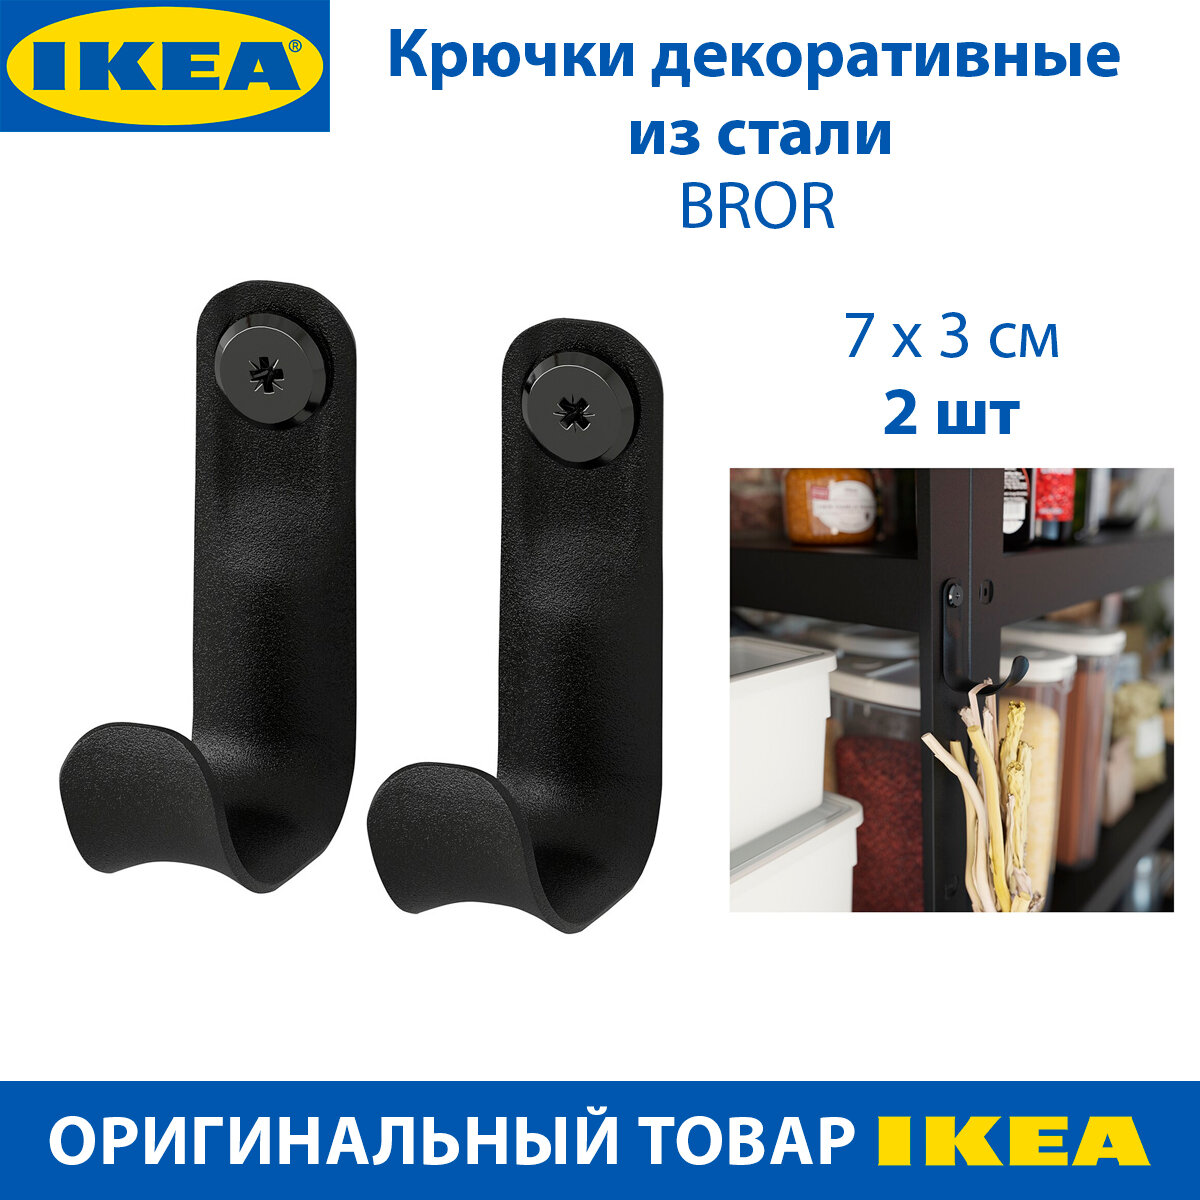 Крючки декоративные IKEA - BROR (брор) из стали черные 5 х 7 см 2 шт